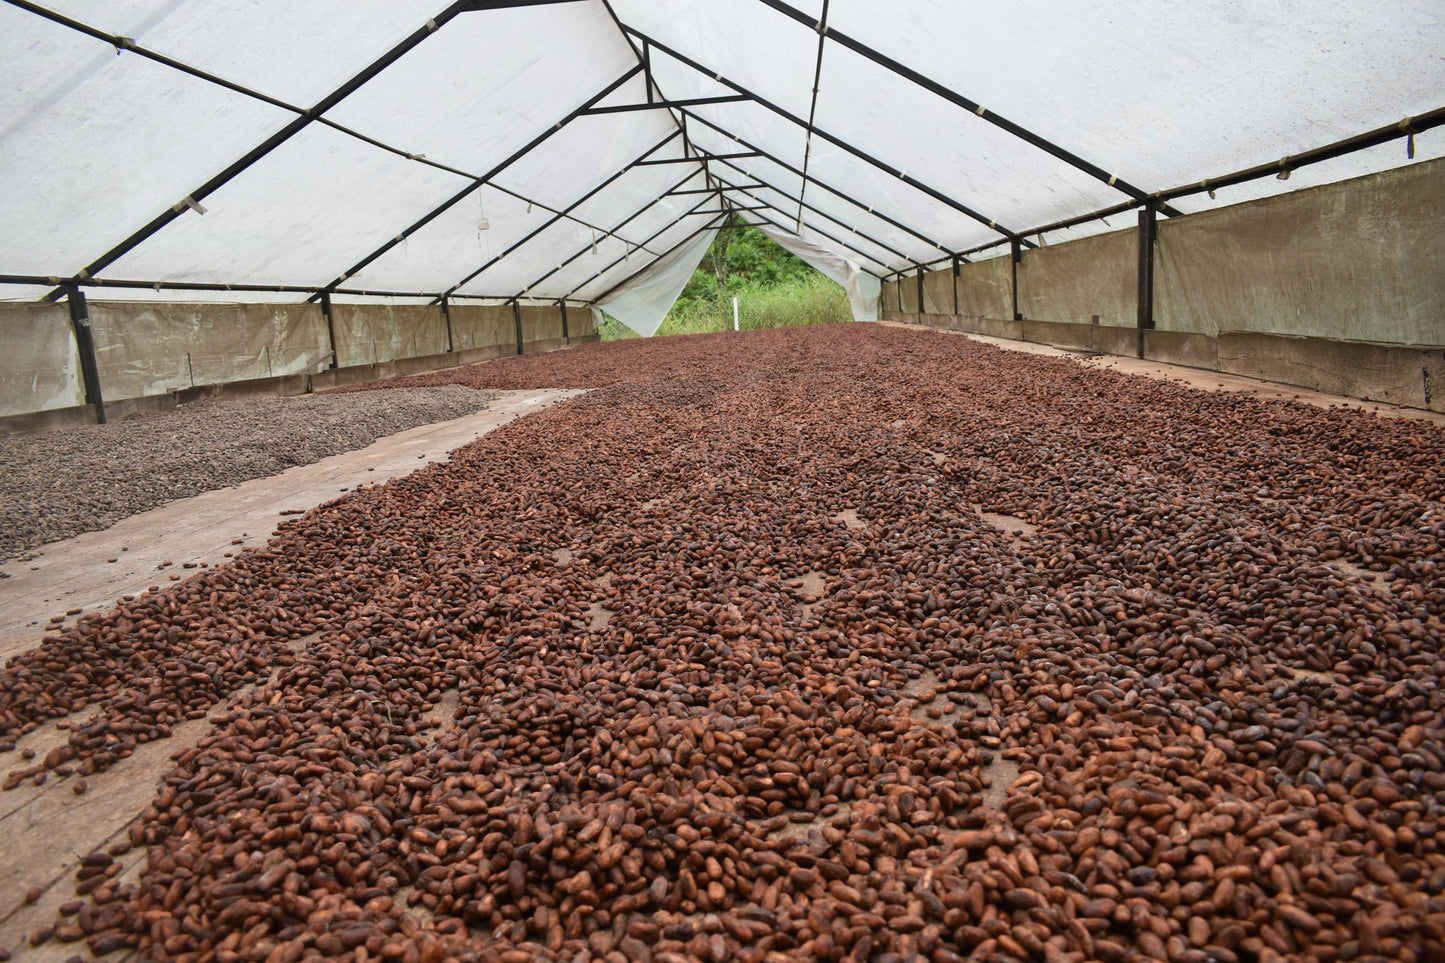 SACHA Kuri Paki 80% Kakao-Schokolade (Kakaonibs)